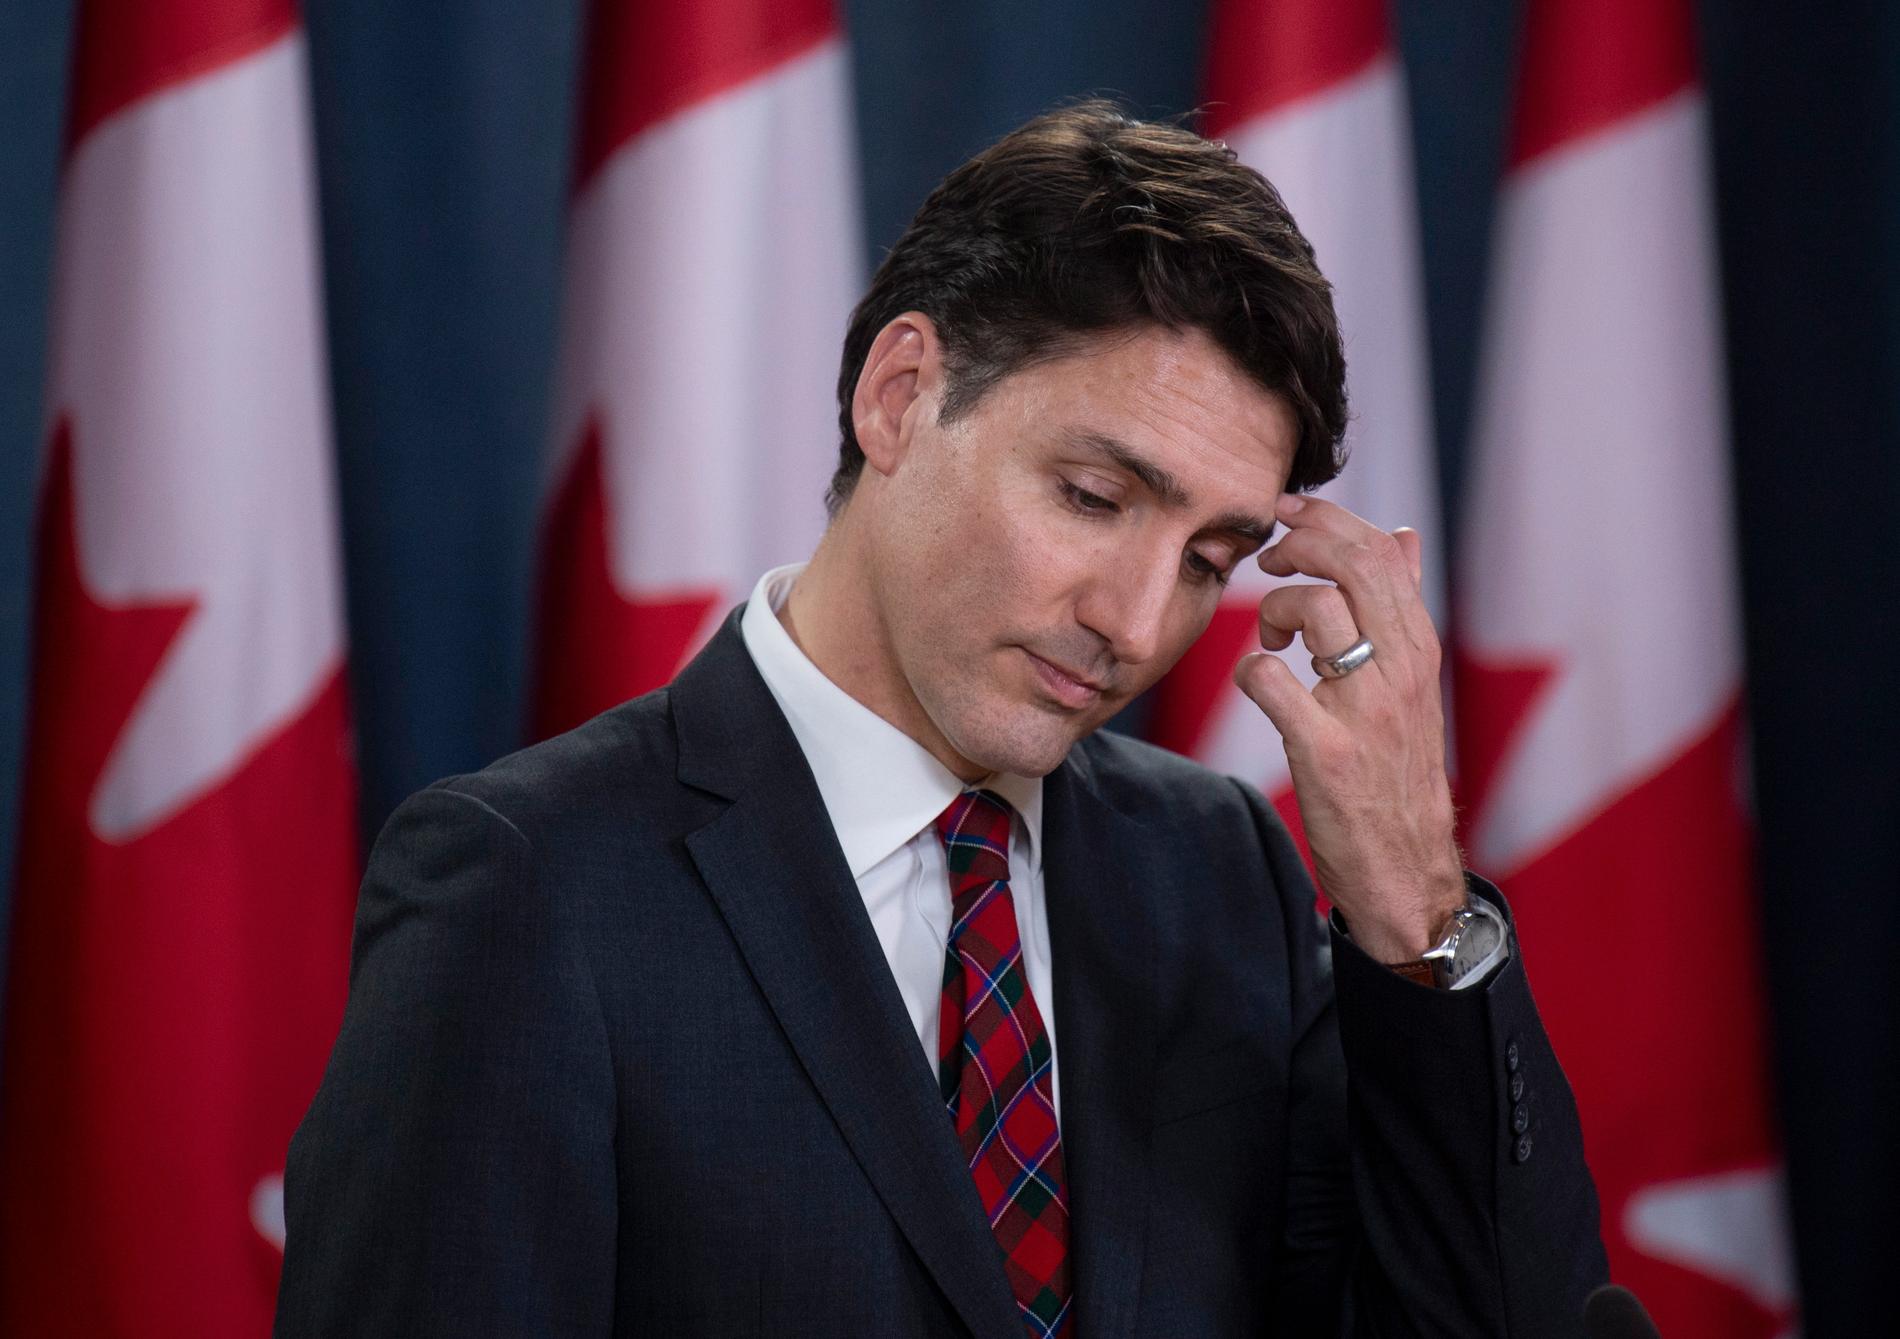 Kanadas premiärminister Justin Trudeau.